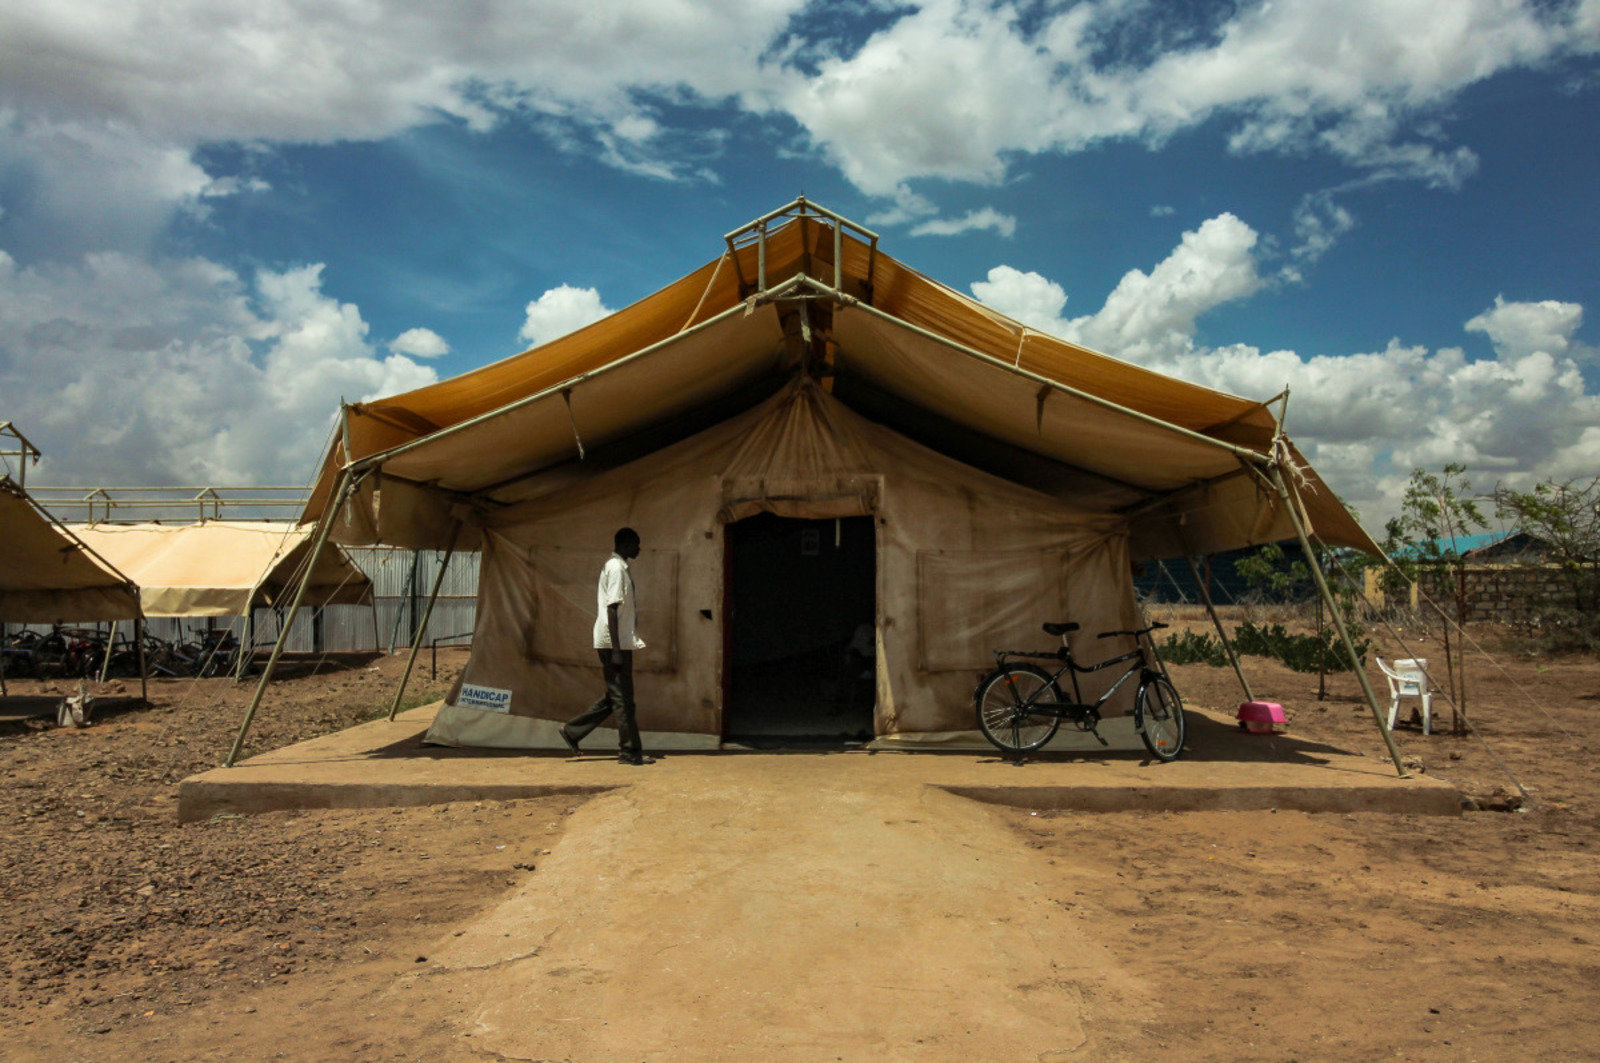  Rampe d'accès vers le centre de réadaptation, camp de Kakuma